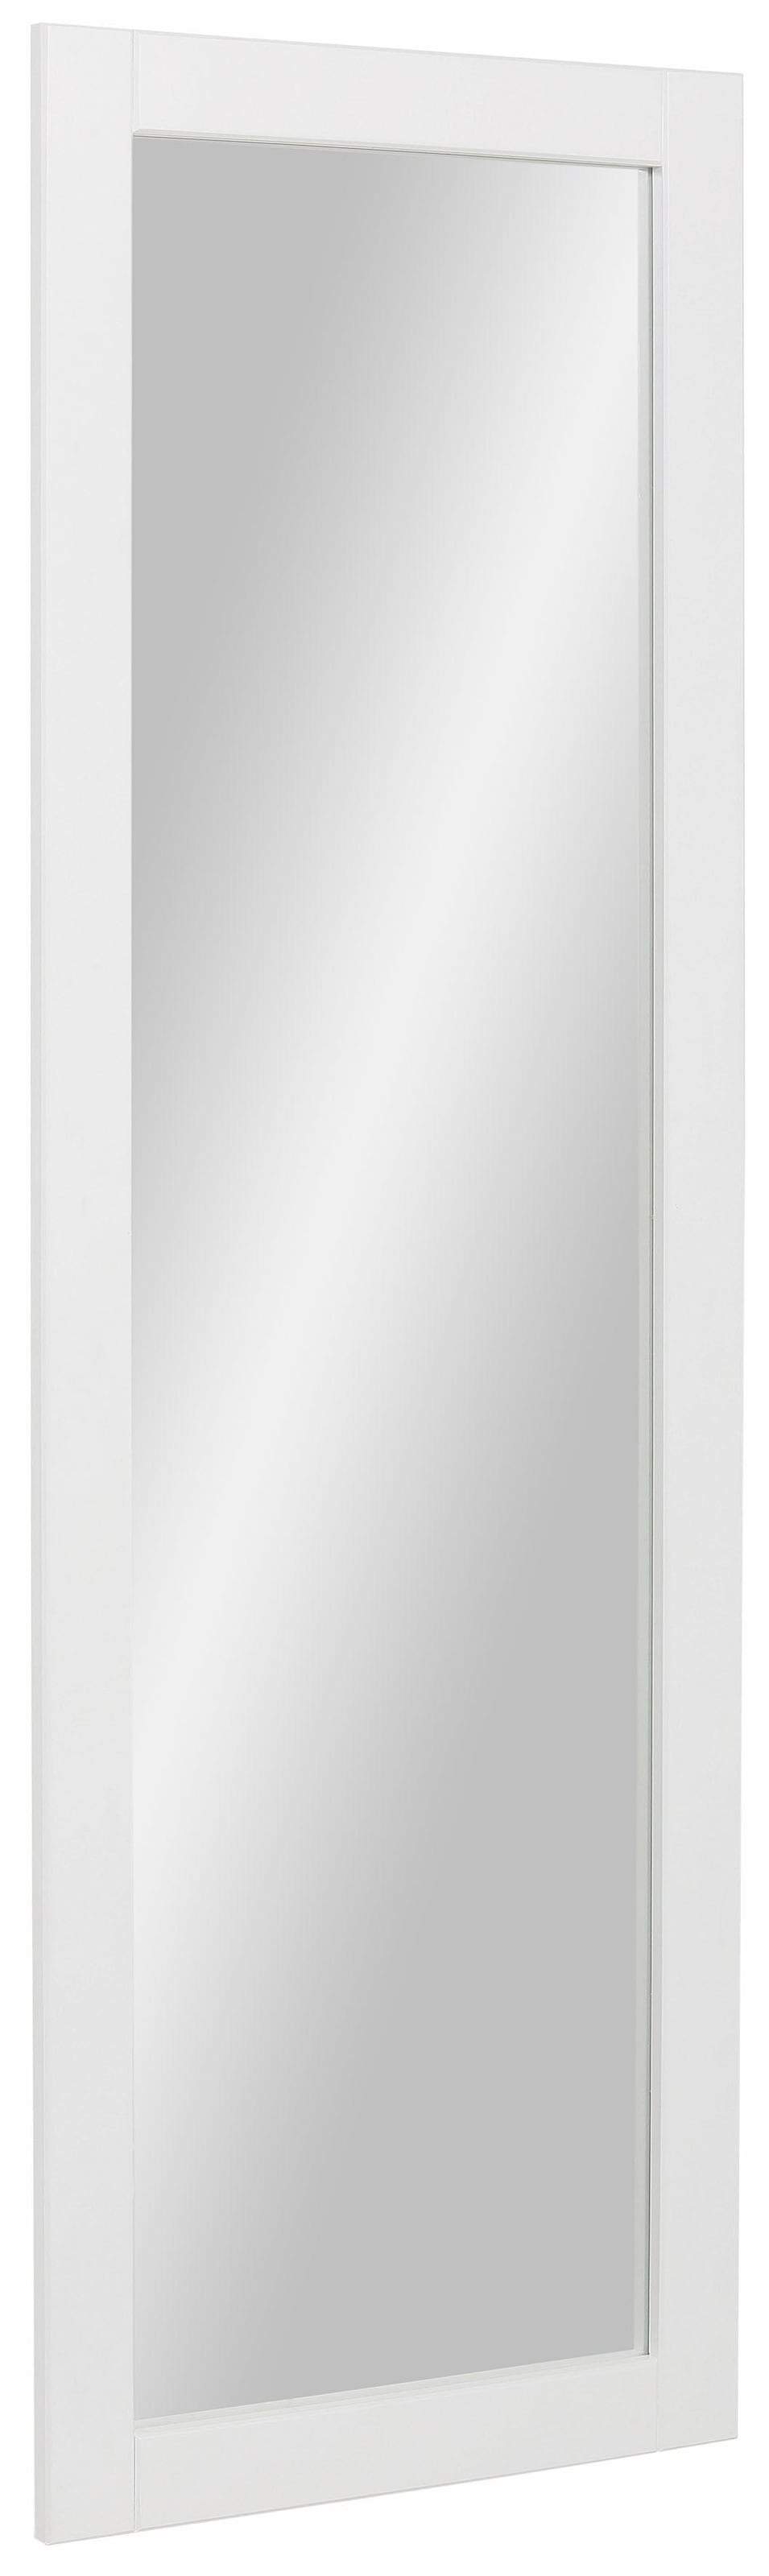 Spiegel »Rondo«, mit einer schönen Rahmenoptik, Breite 50 cm